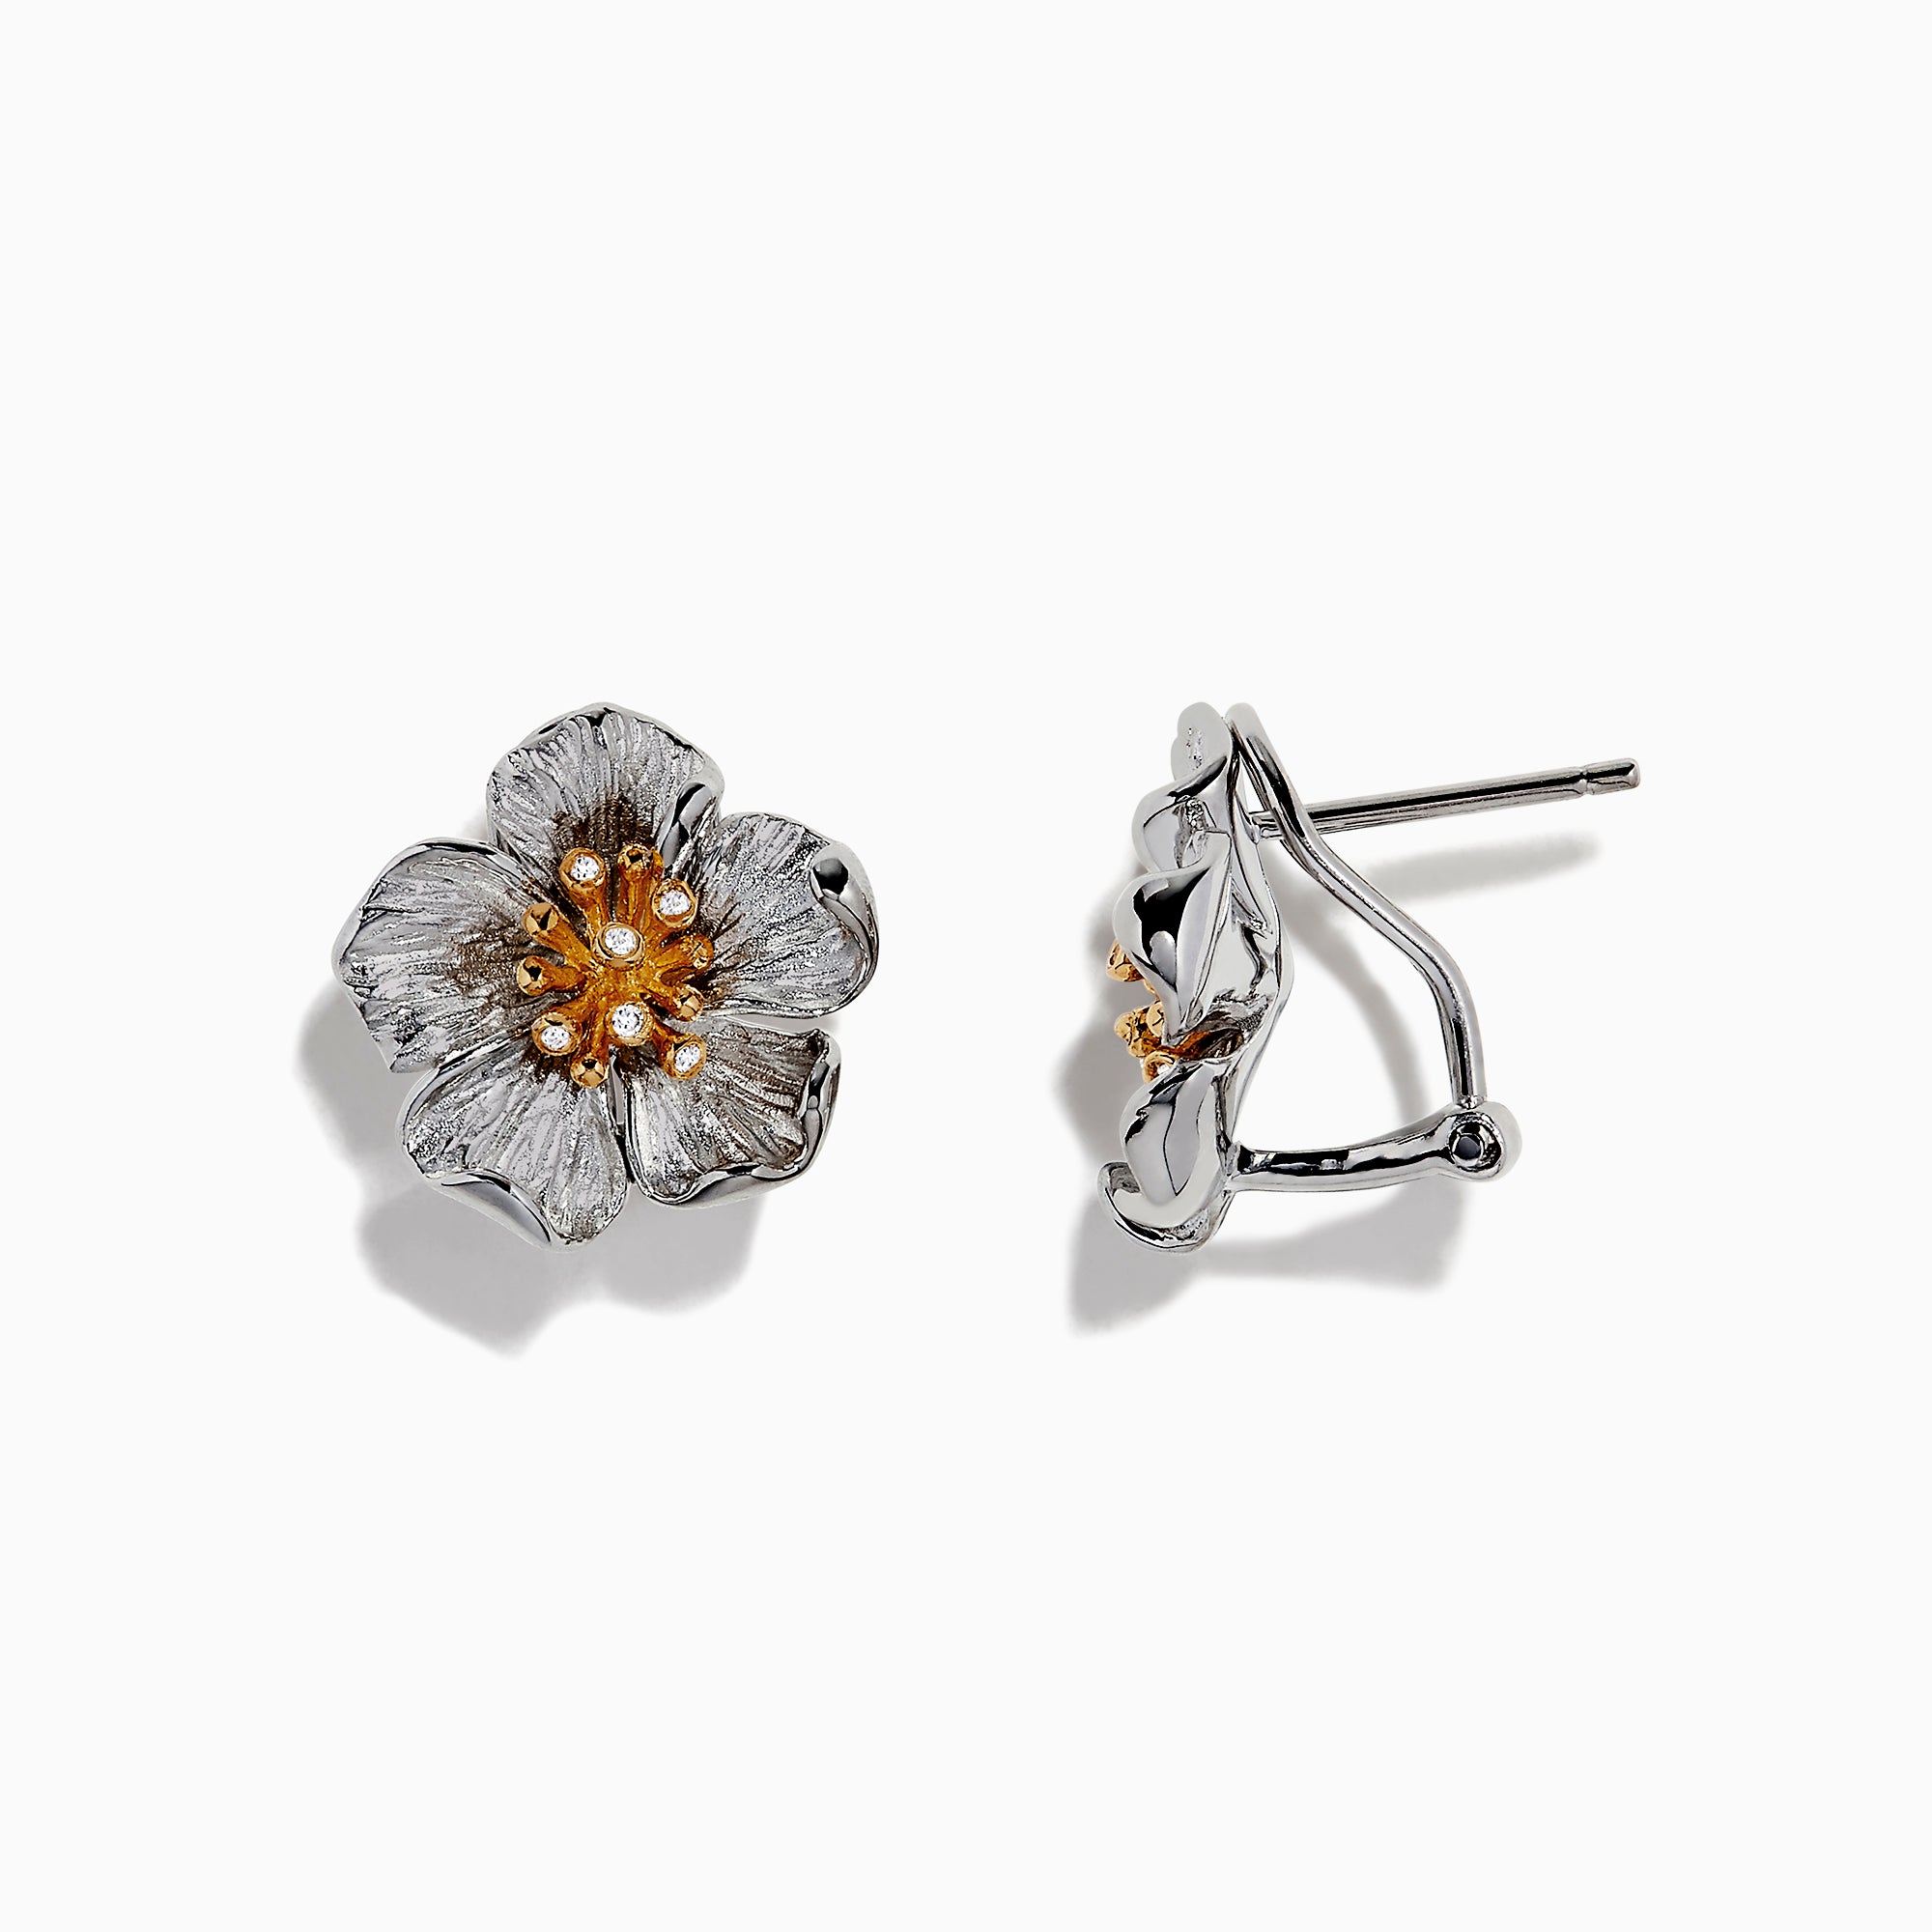 Details 199+ effy jewelry earrings best